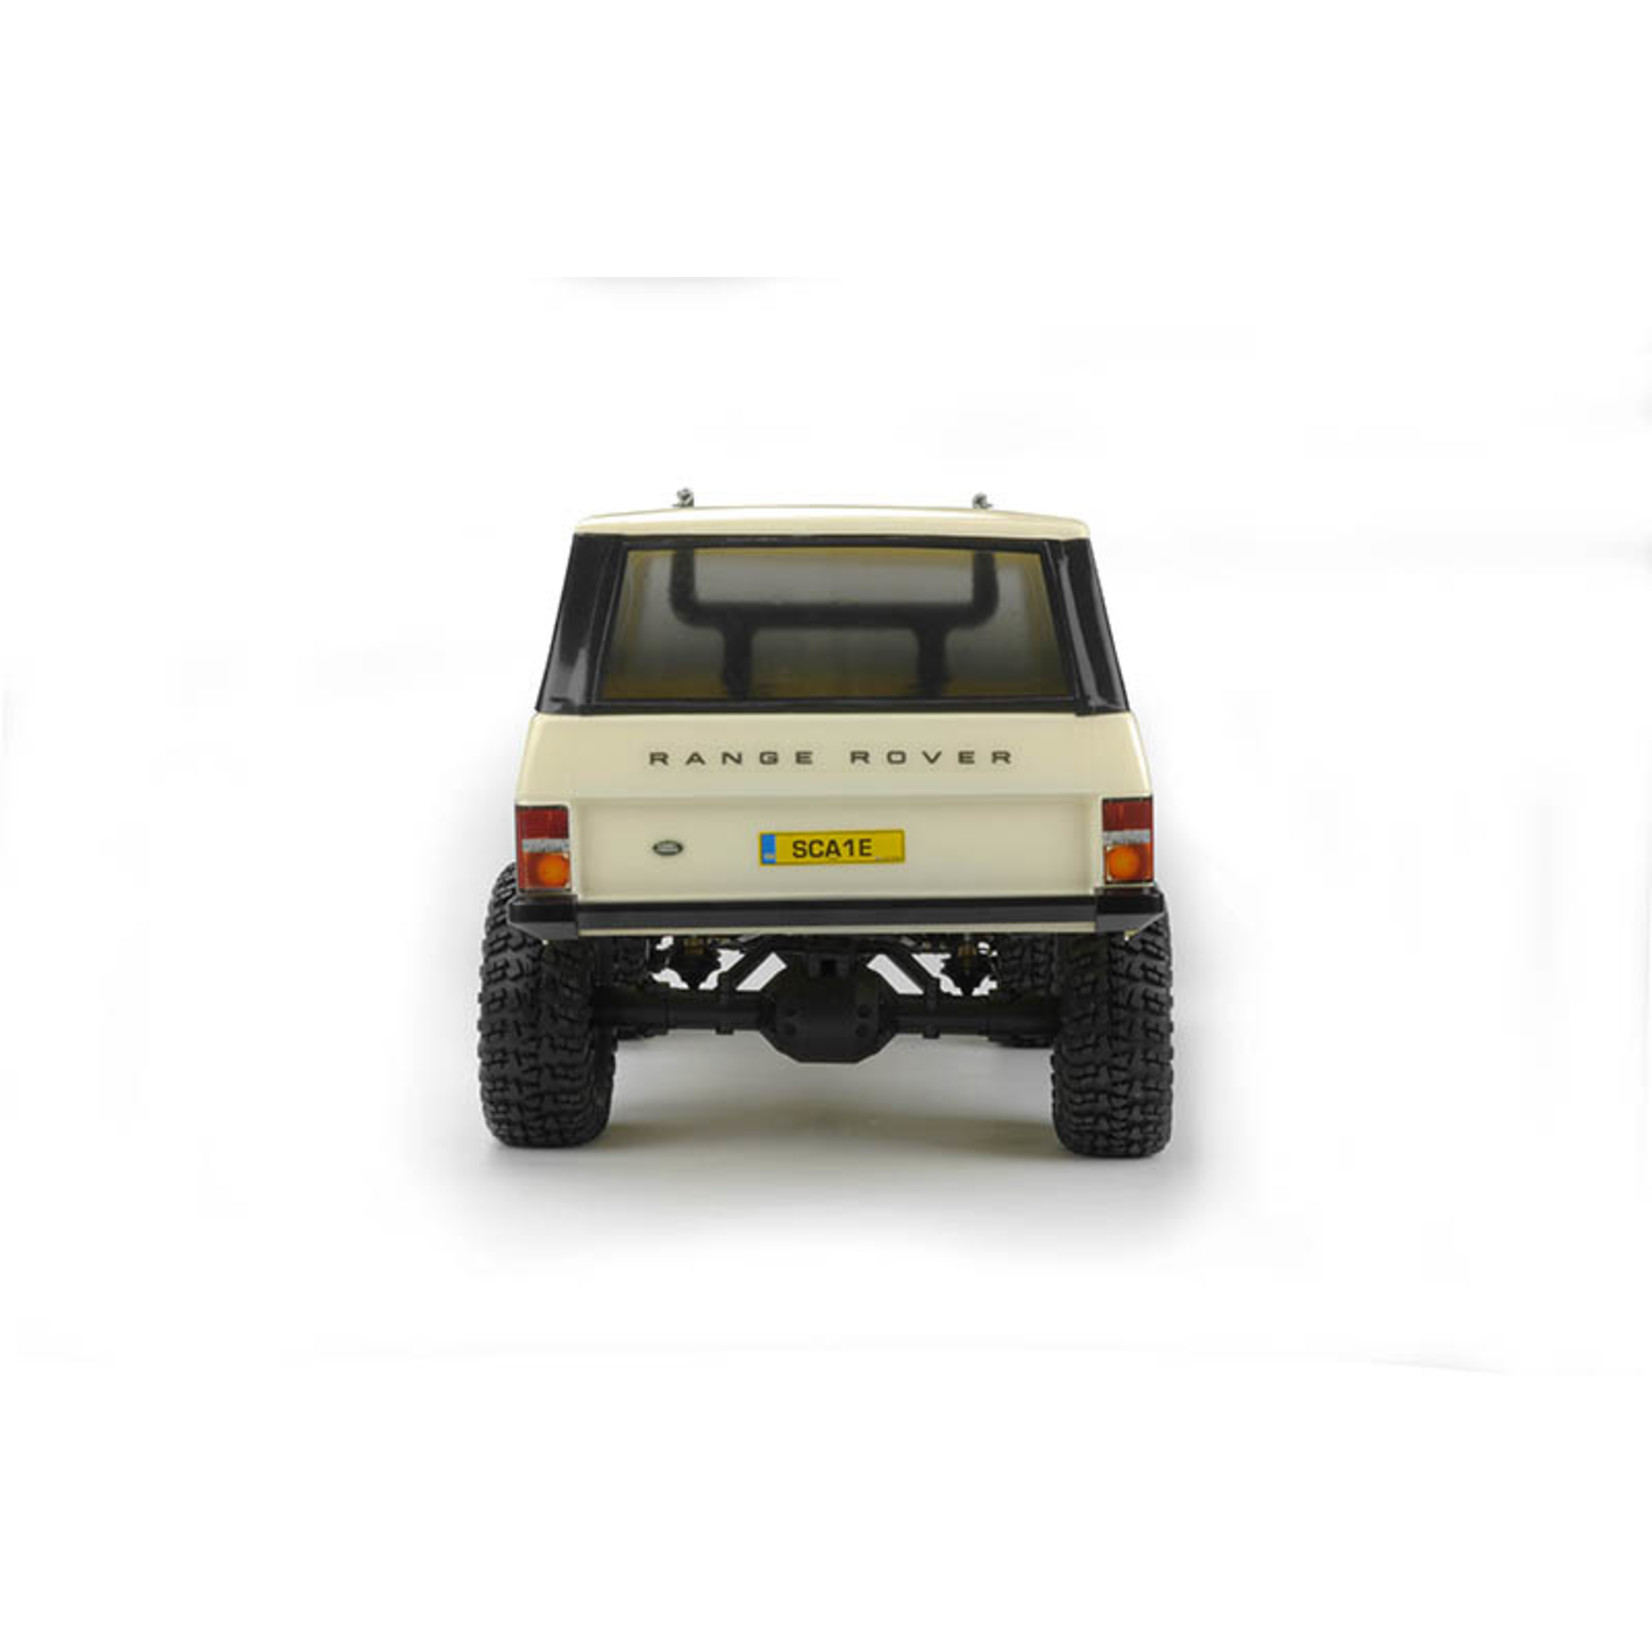 CARISMA SCA-1E 1/10 Scale '81 Range Rover 4WD Scaler, RTR